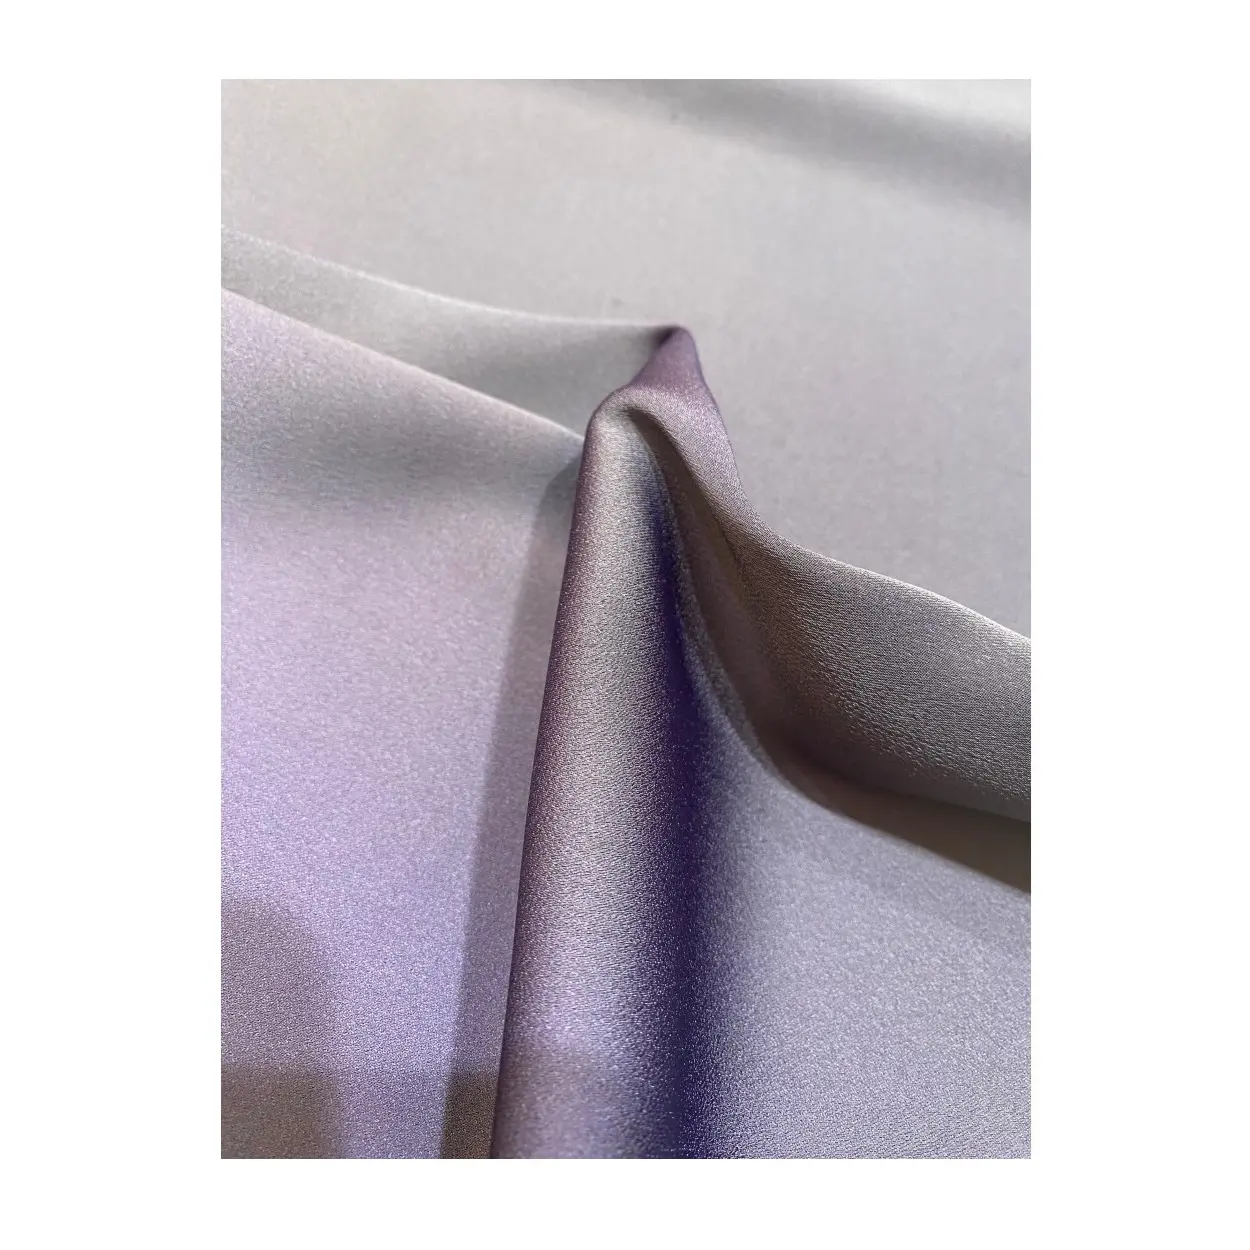 OEM dibuat khusus kain ajaib hitam pola Solid dan Multi Warna tersedia untuk dijual oleh eksportir India